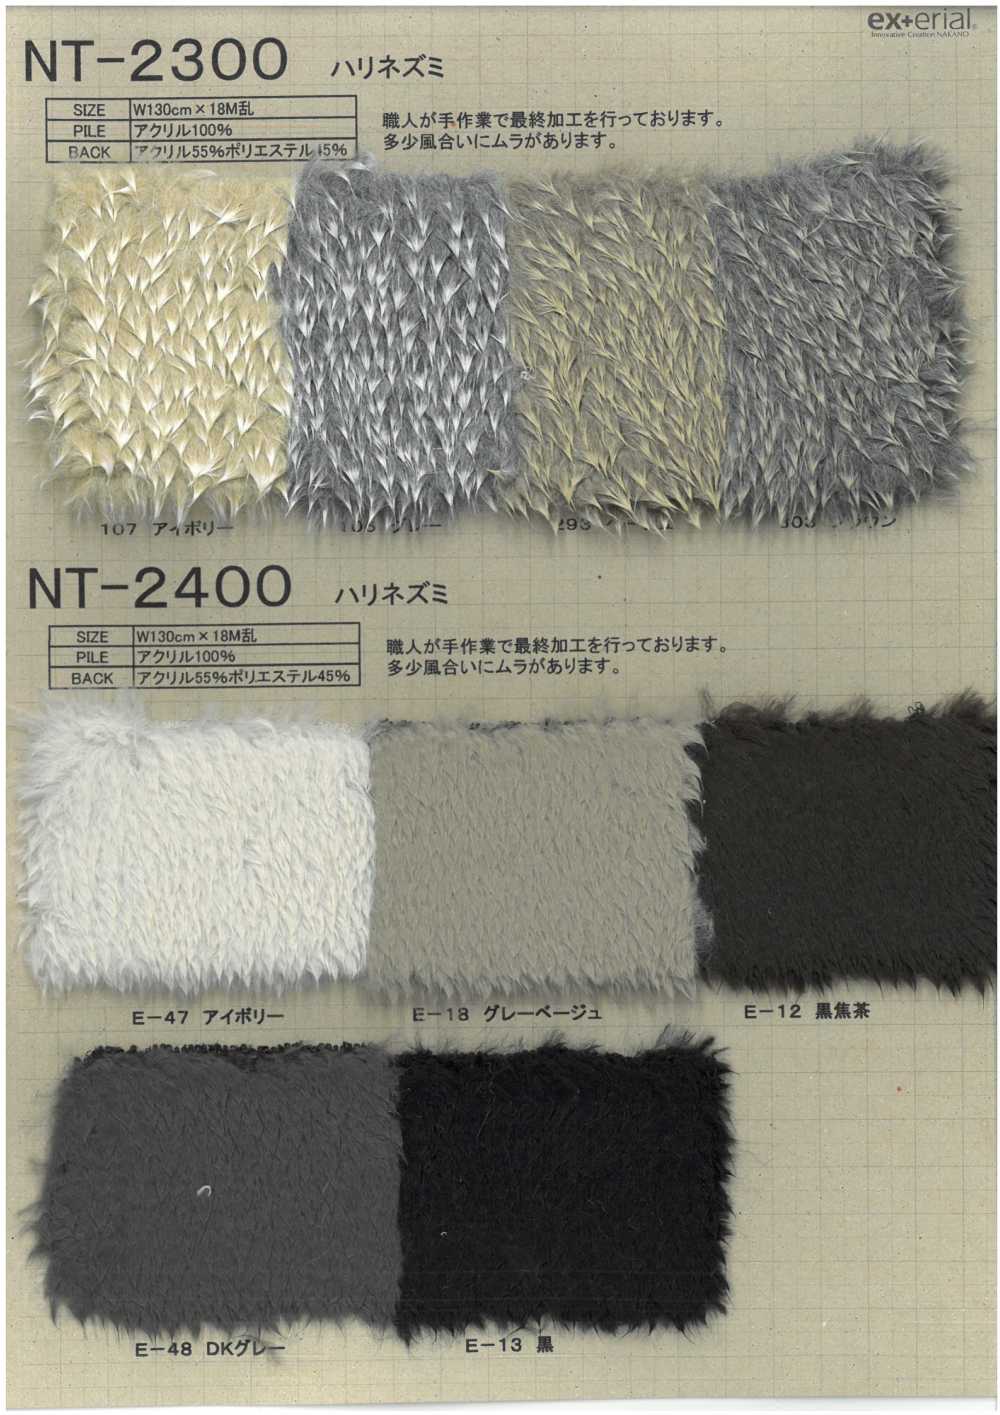 NT-2300 Pelliccia Artigianale [Riccio][Tessile / Tessuto] Industria Delle Magliette A Nakano